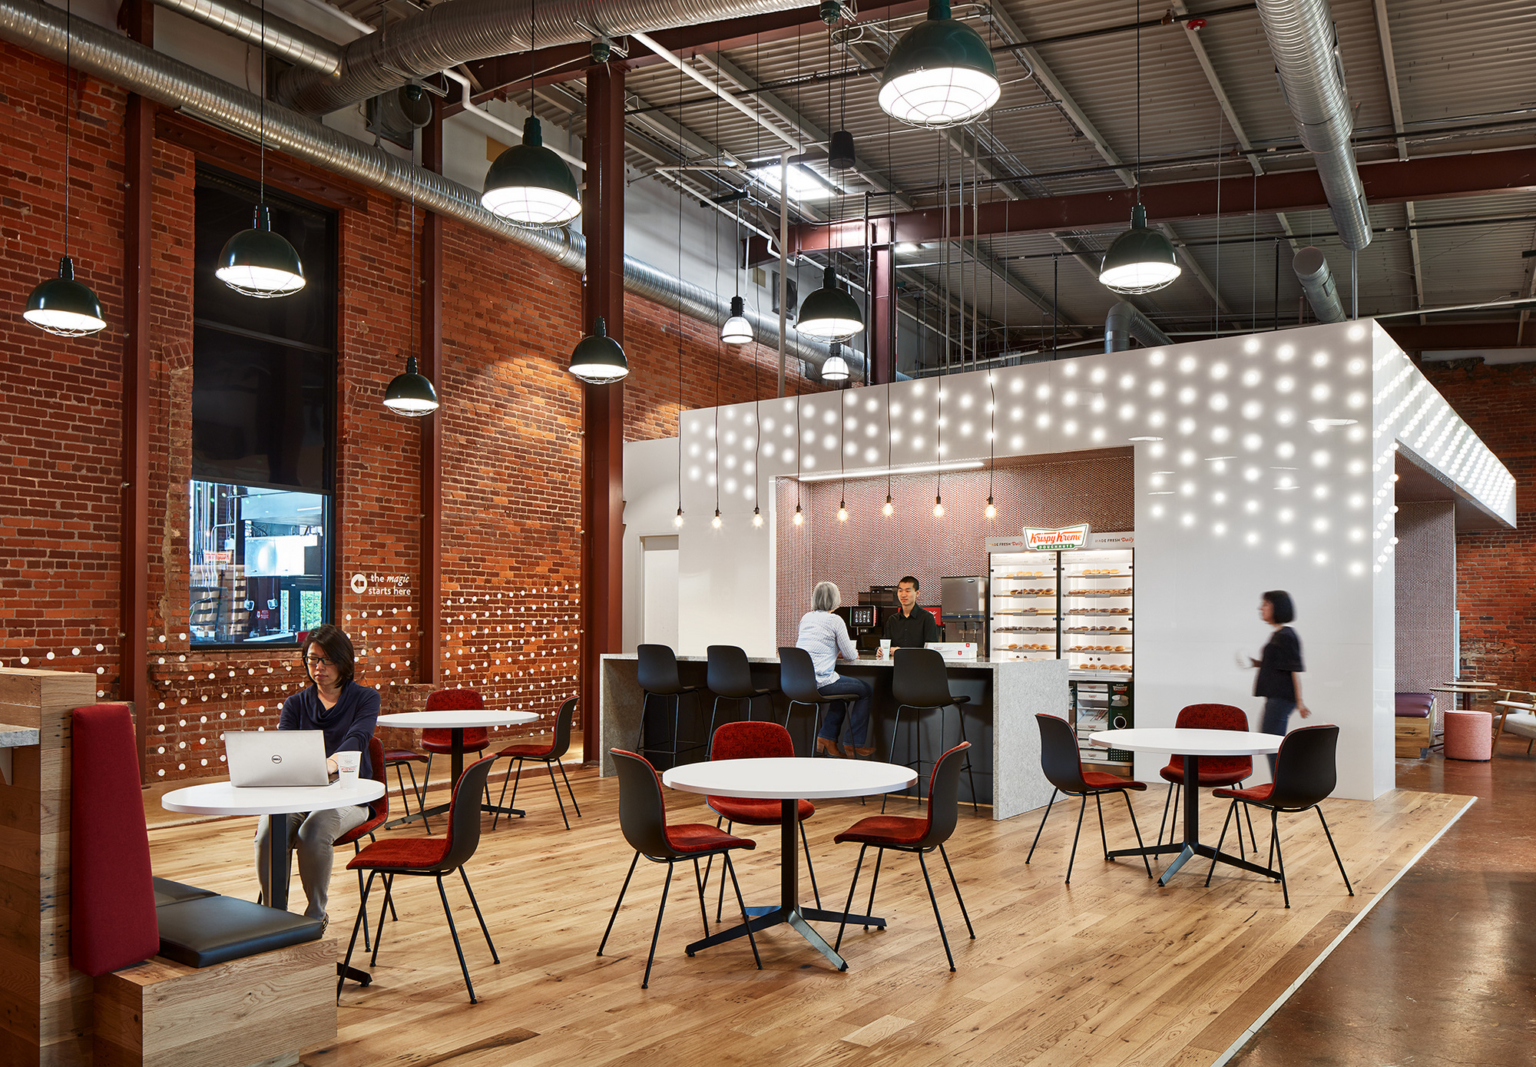 クリスピークリームドーナッツのレンガが似合うオフィスのカフェスペース